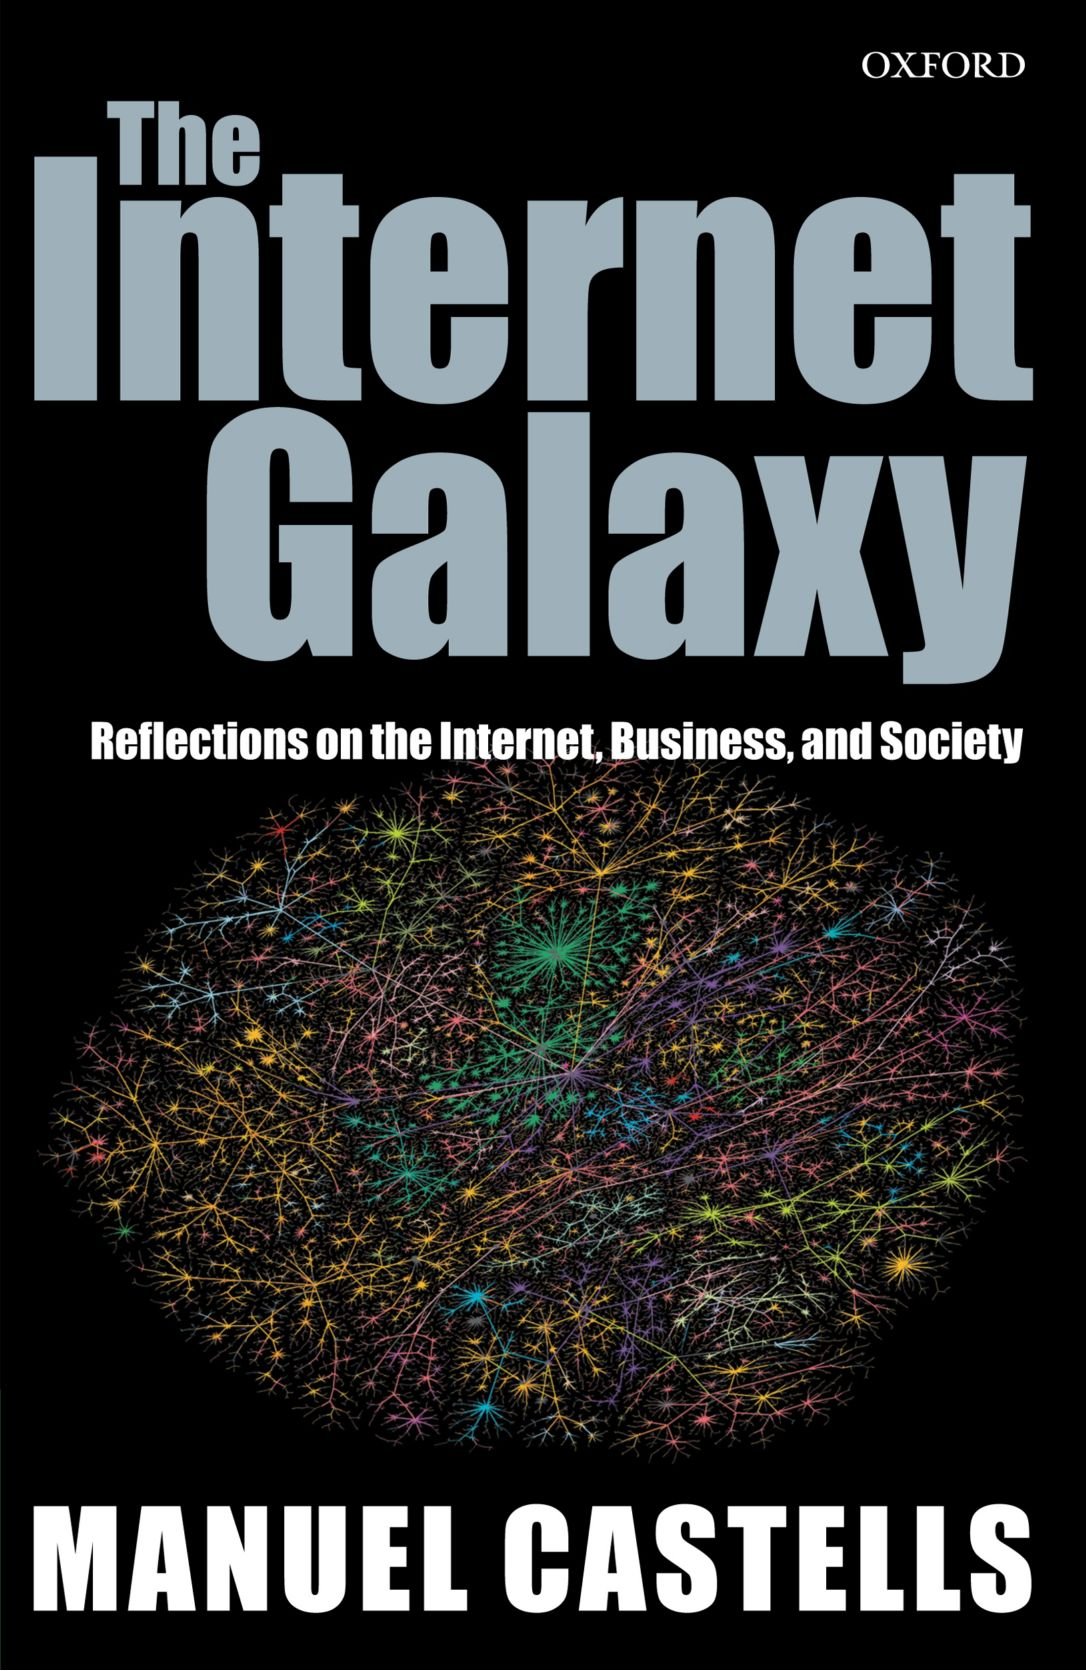 The Internet Galaxy by Manuel Castells